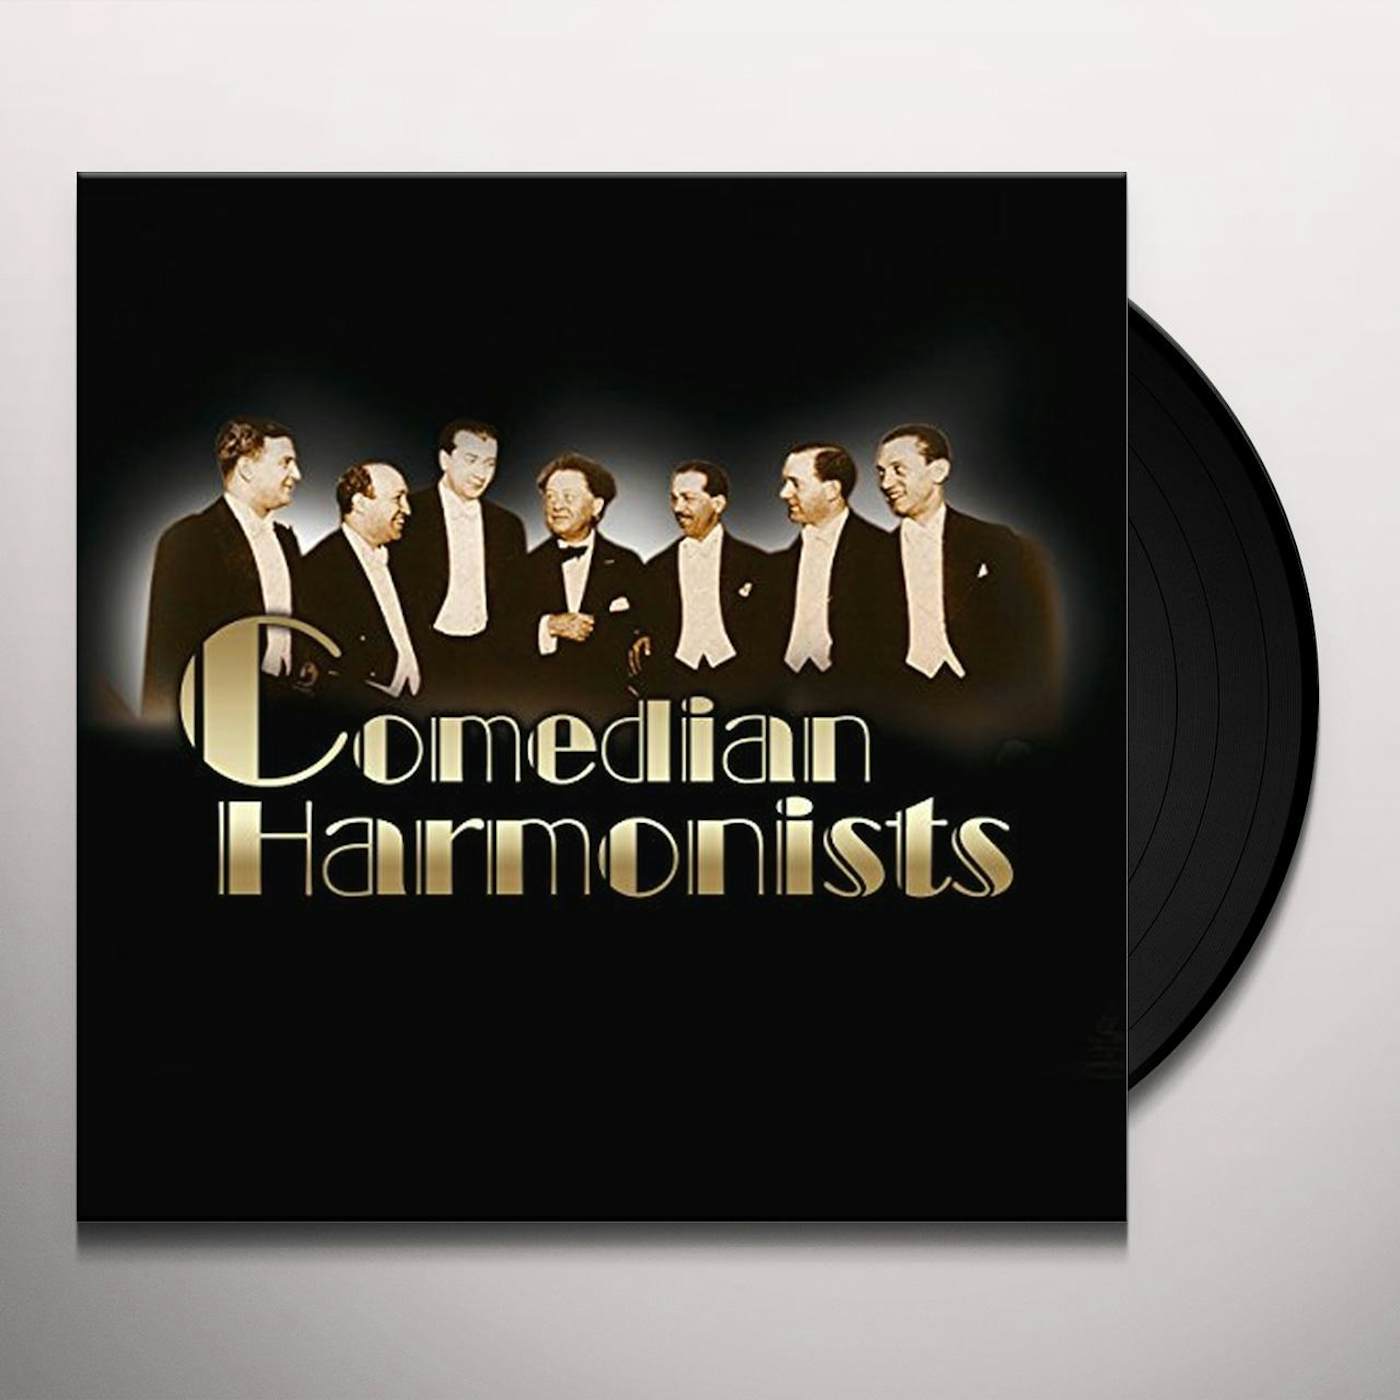 Comedian Harmonists Vinyl Record